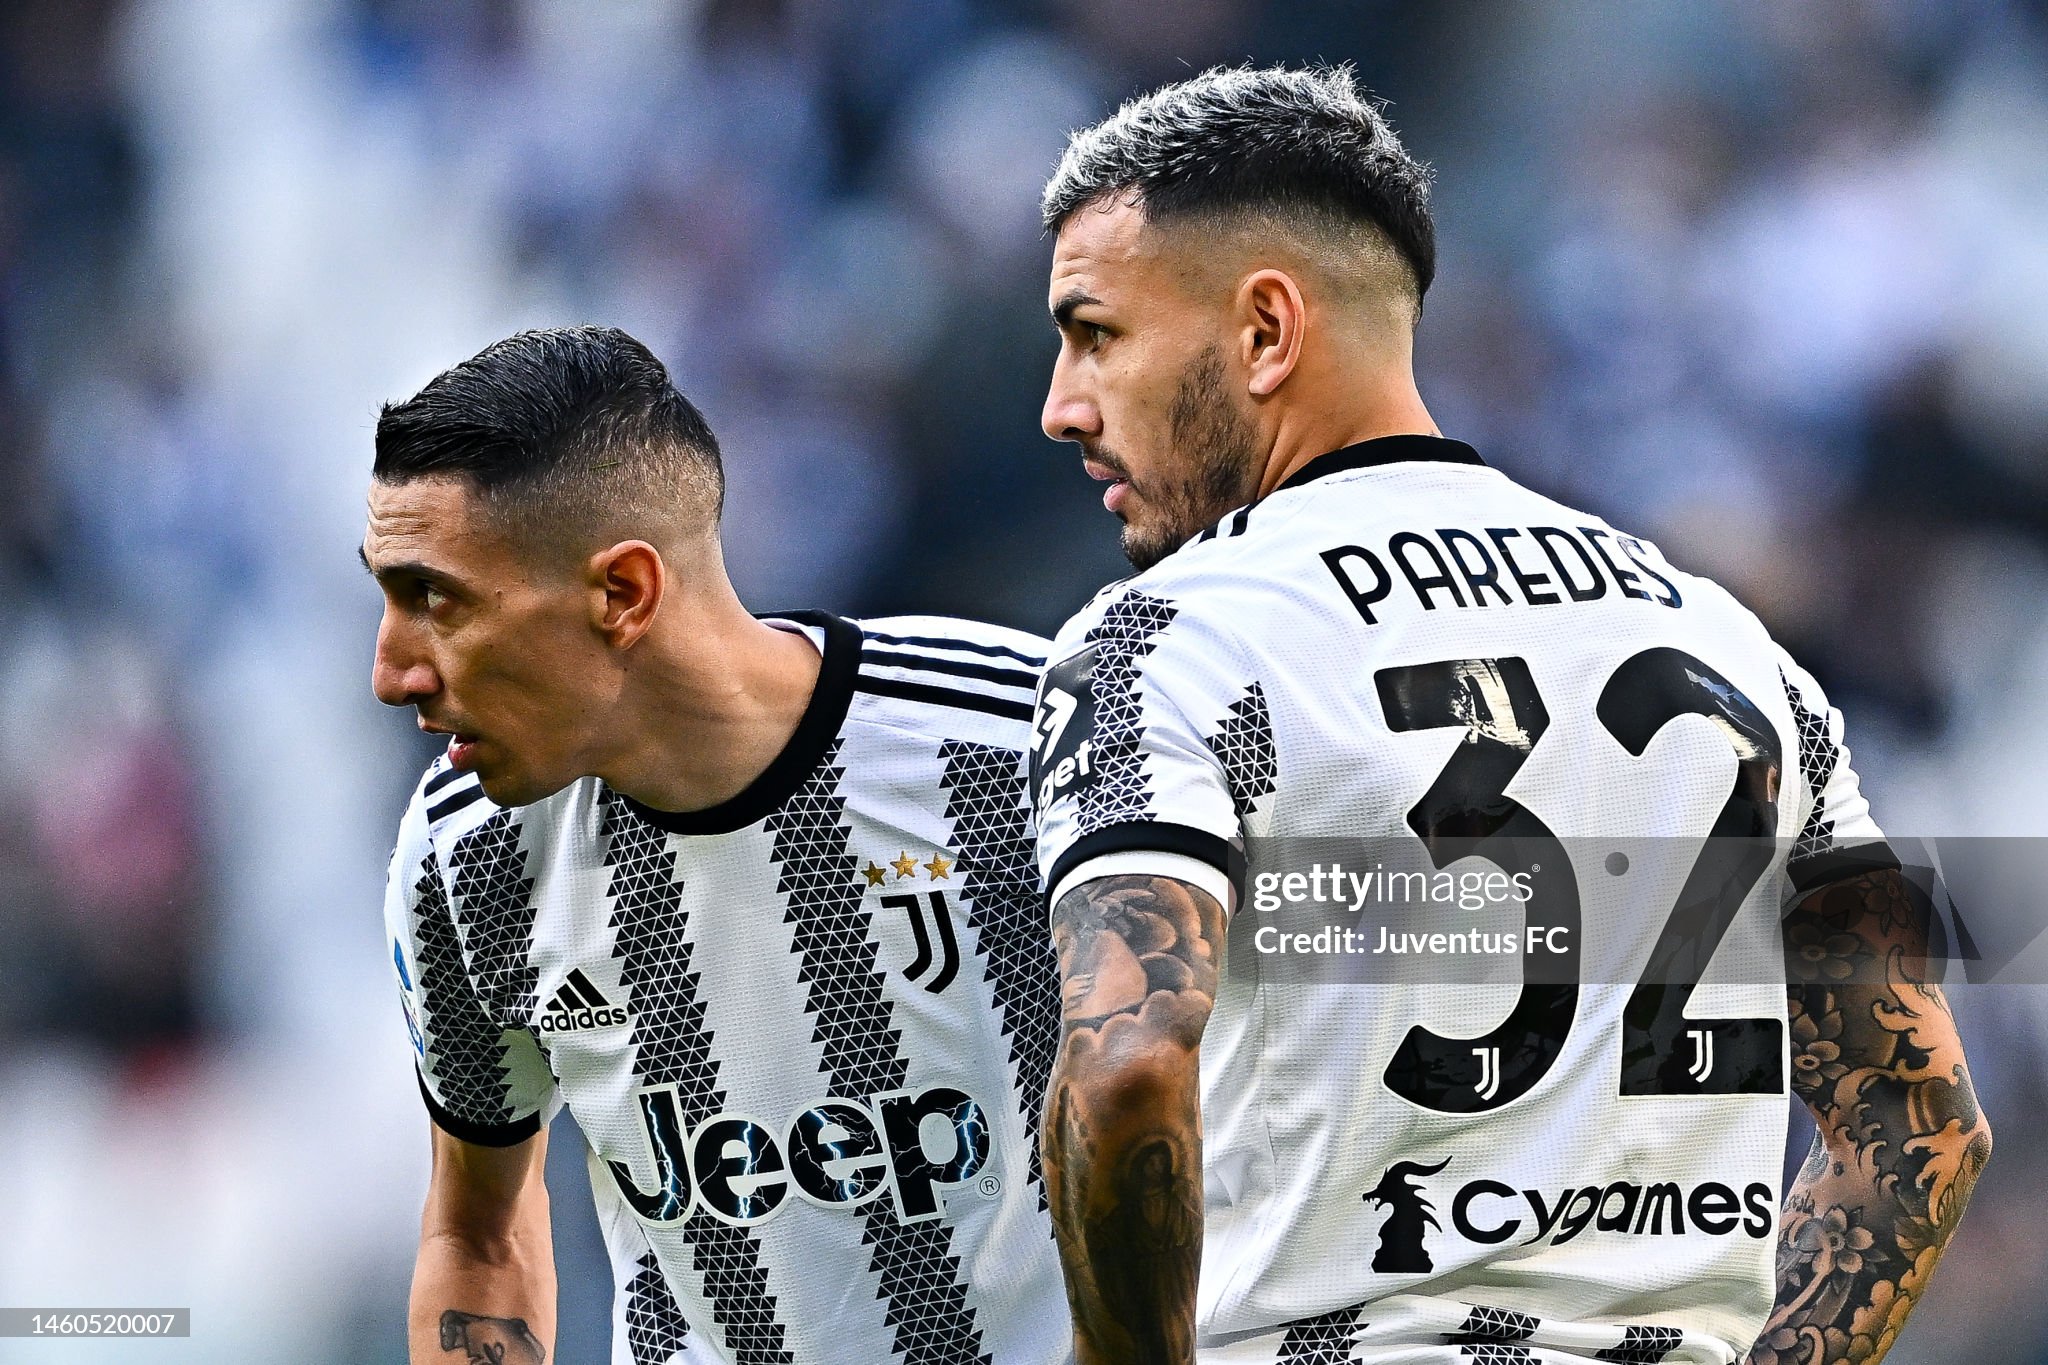 Argentinian pair edge closer to Juventus exit door